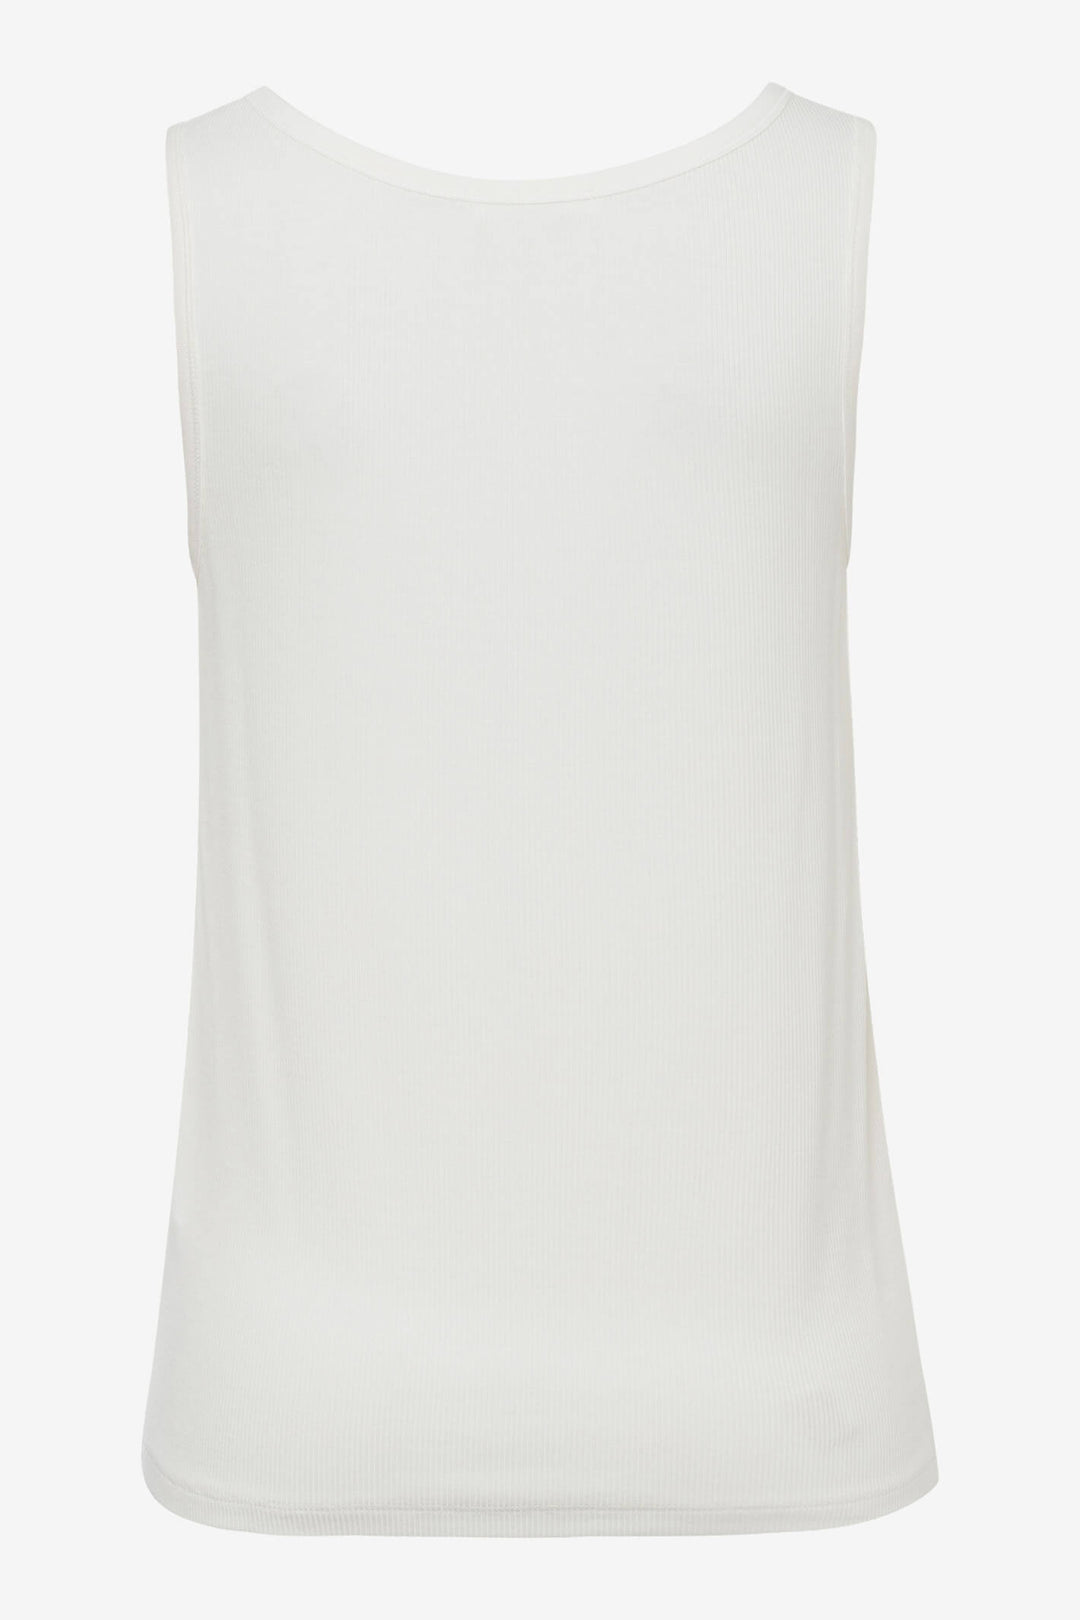 Brax Ivy 34-4707/98 White Vest Top - Shirley Allum Boutique